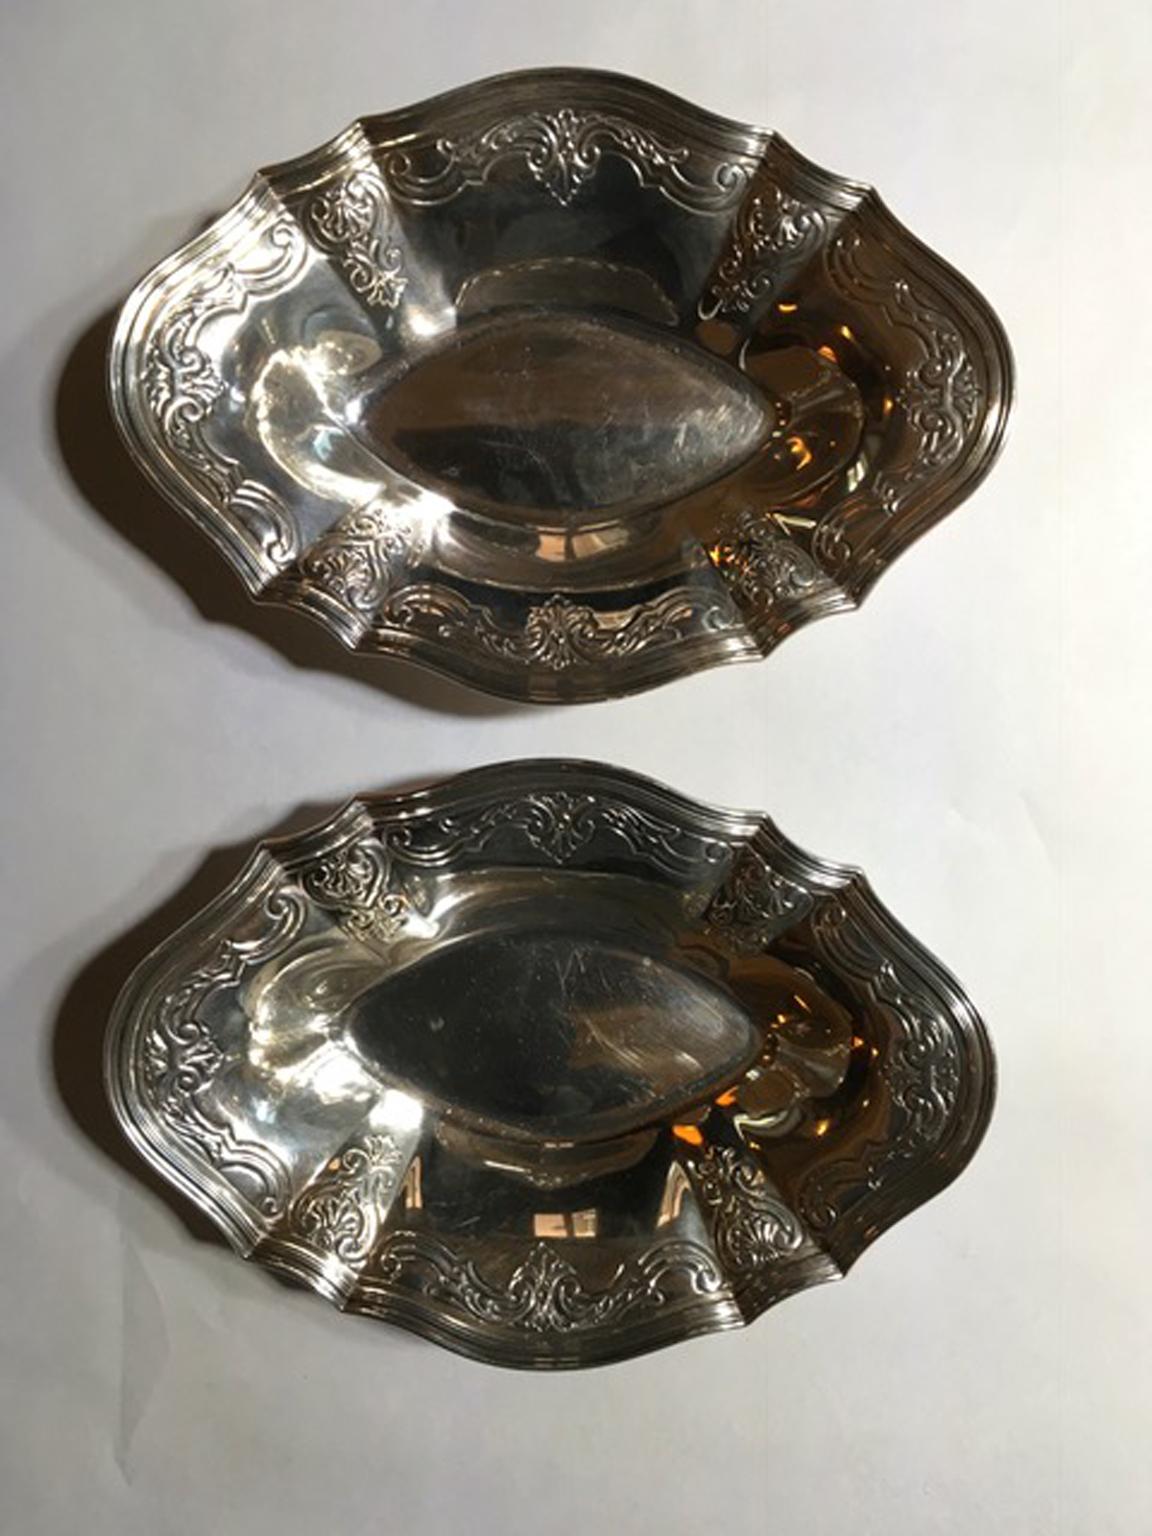 Zwei viktorianische Schalen aus Sterlingsilber von Tiffany, Ende 19. Jahrhundert, New York

Dieses Paar eleganter Schalen ist aus Silber 925/1000 von Tiffany & Co. gefertigt, auf dem Sockel markiert und nummeriert 17954 - 1056
Stücke von zeitloser